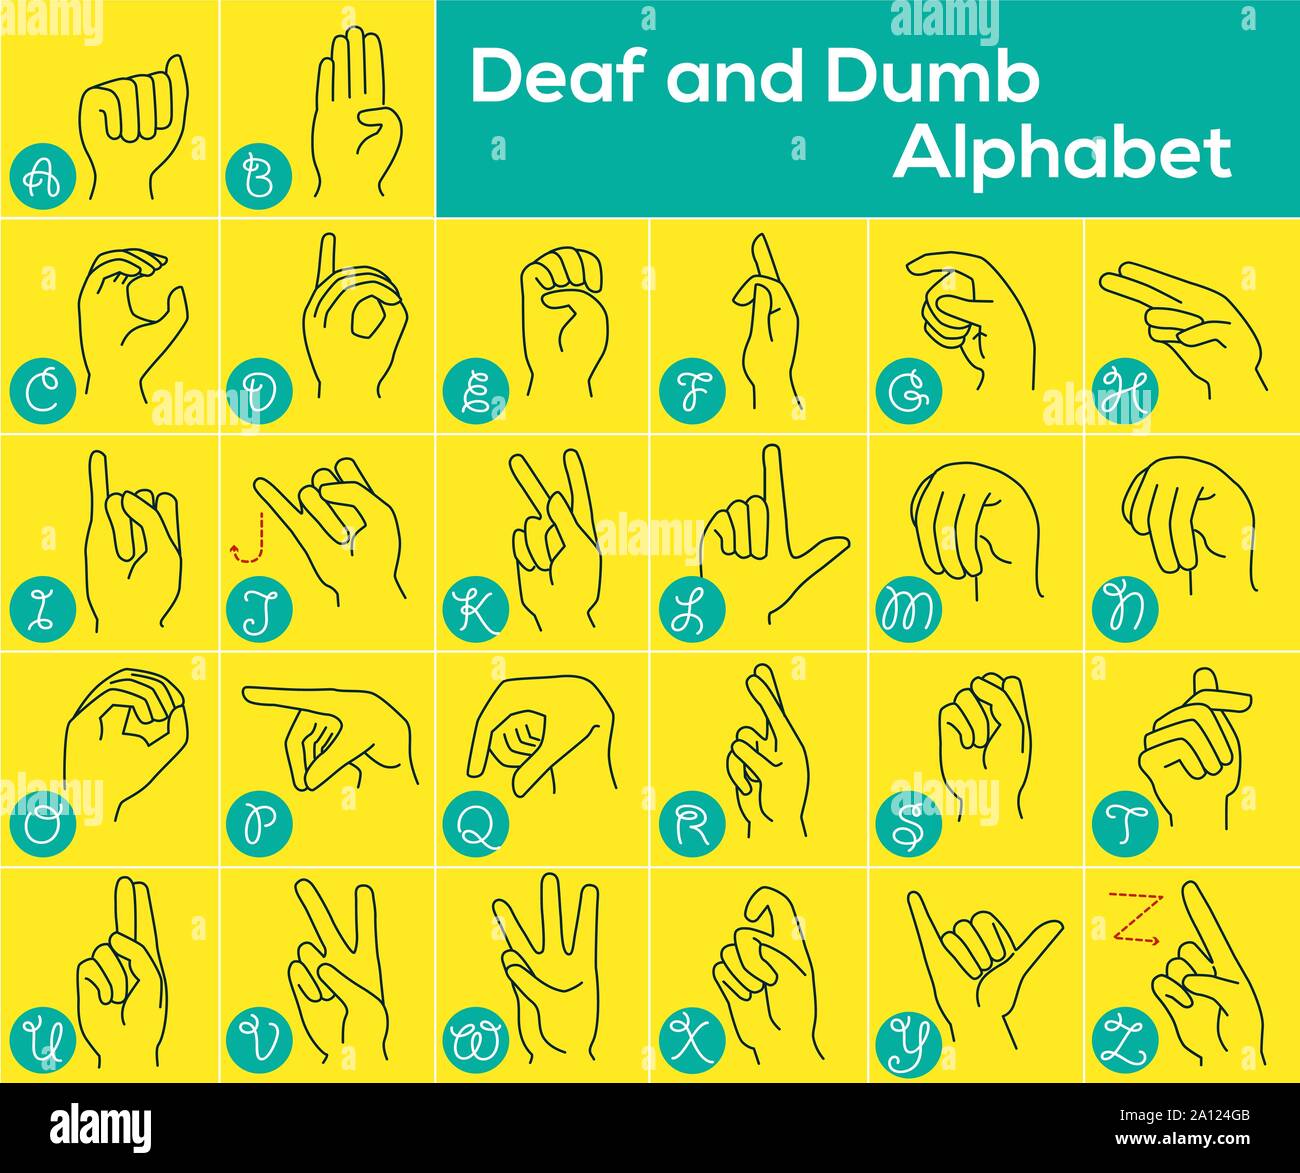 Vector illustration de sourds-muets, la désignation de l'alphabet anglais lettres avec les mains, ABC international American Sign Language, ASL Illustration de Vecteur